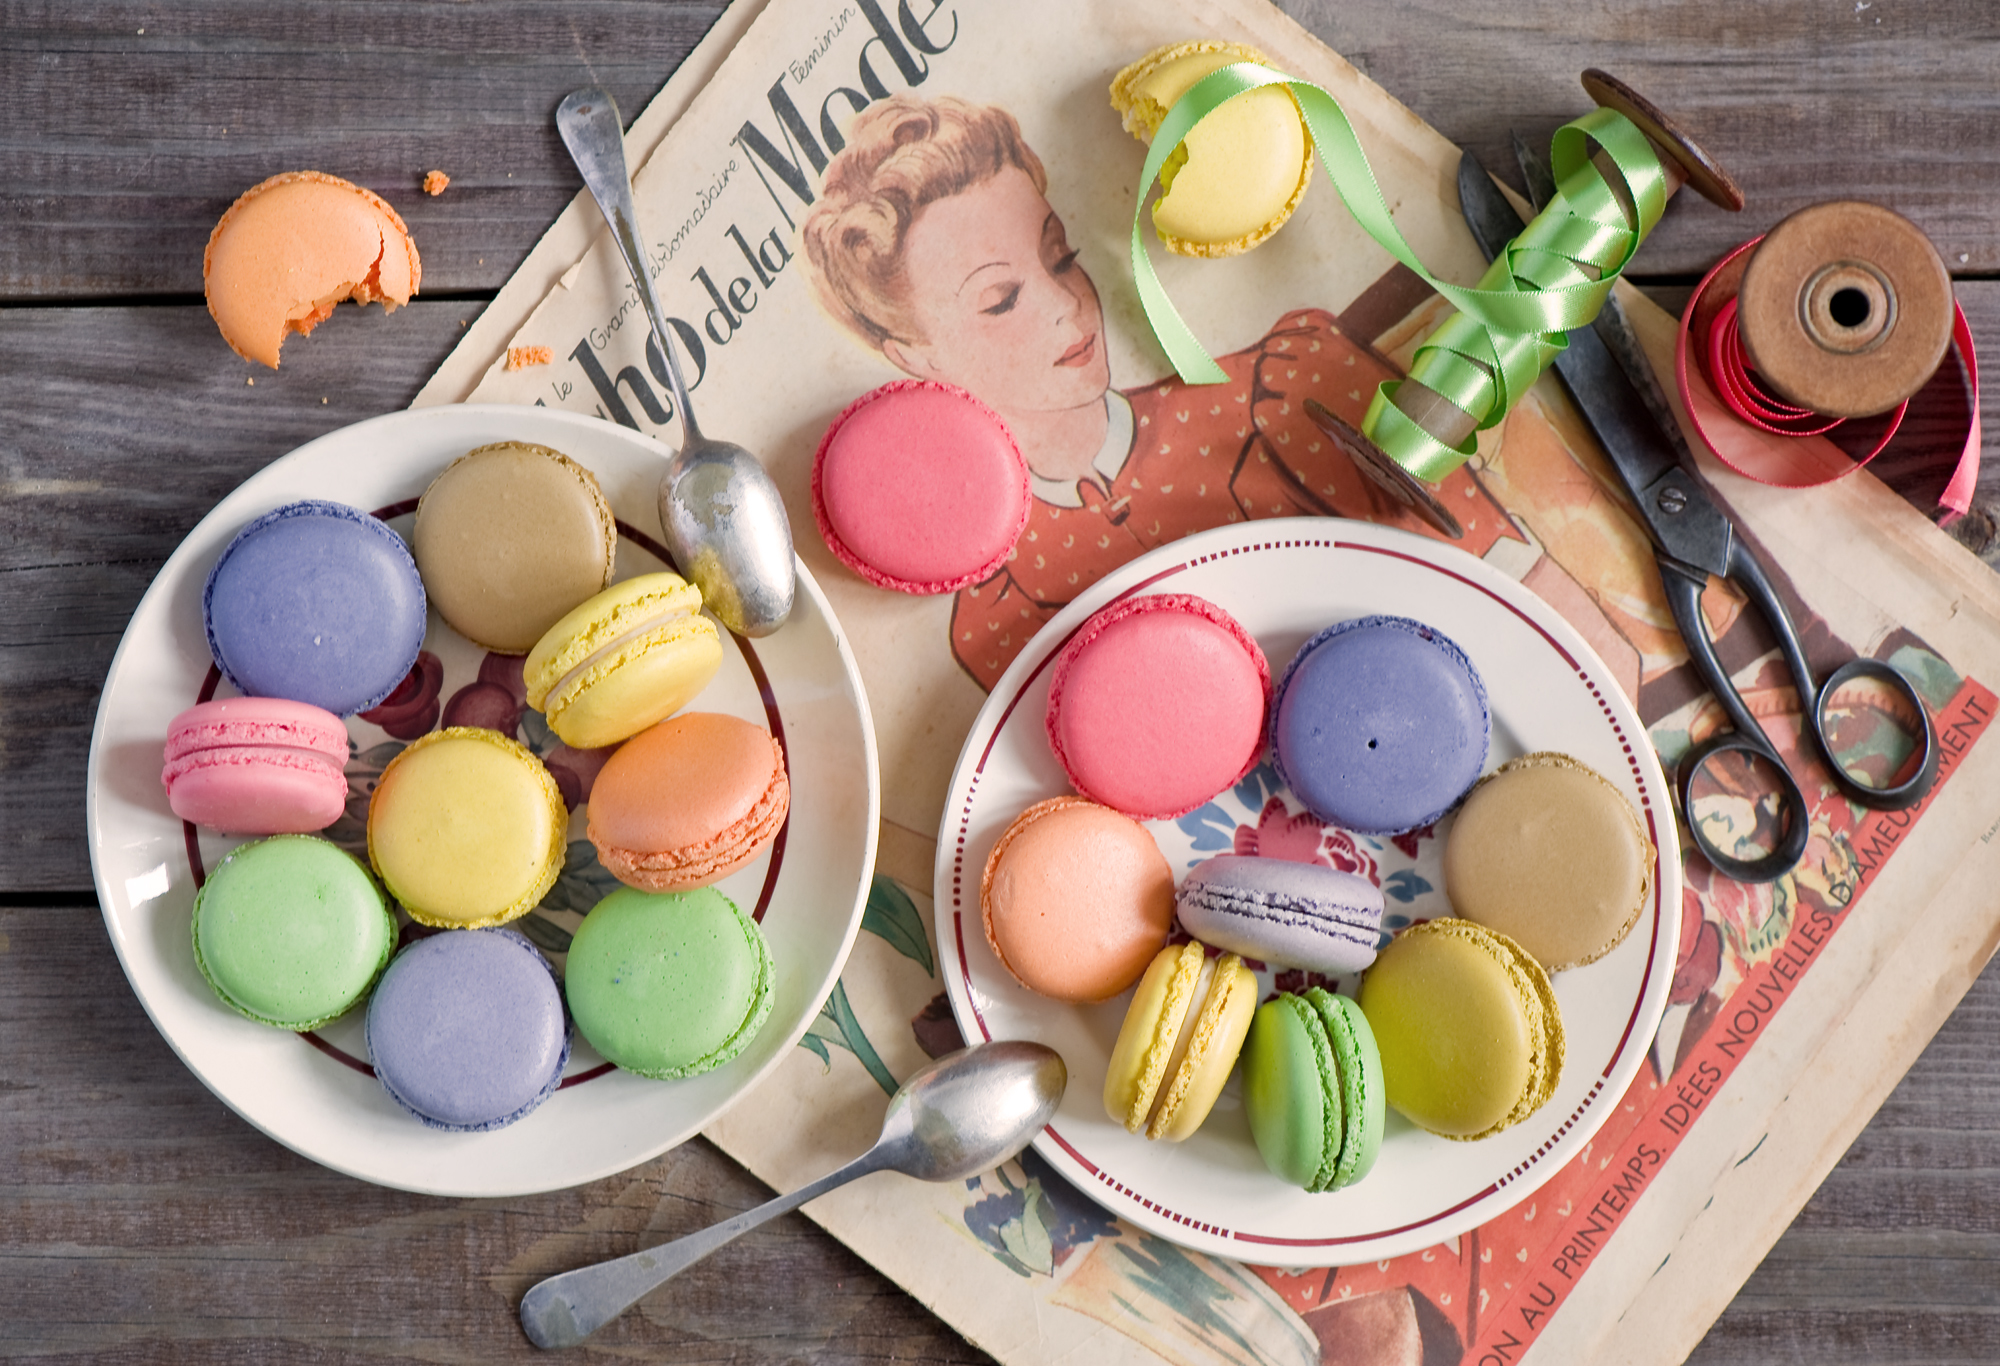 Скачать обои бесплатно Macarons, Печенье, Еда, Пустыня, Разноцветный картинка на рабочий стол ПК